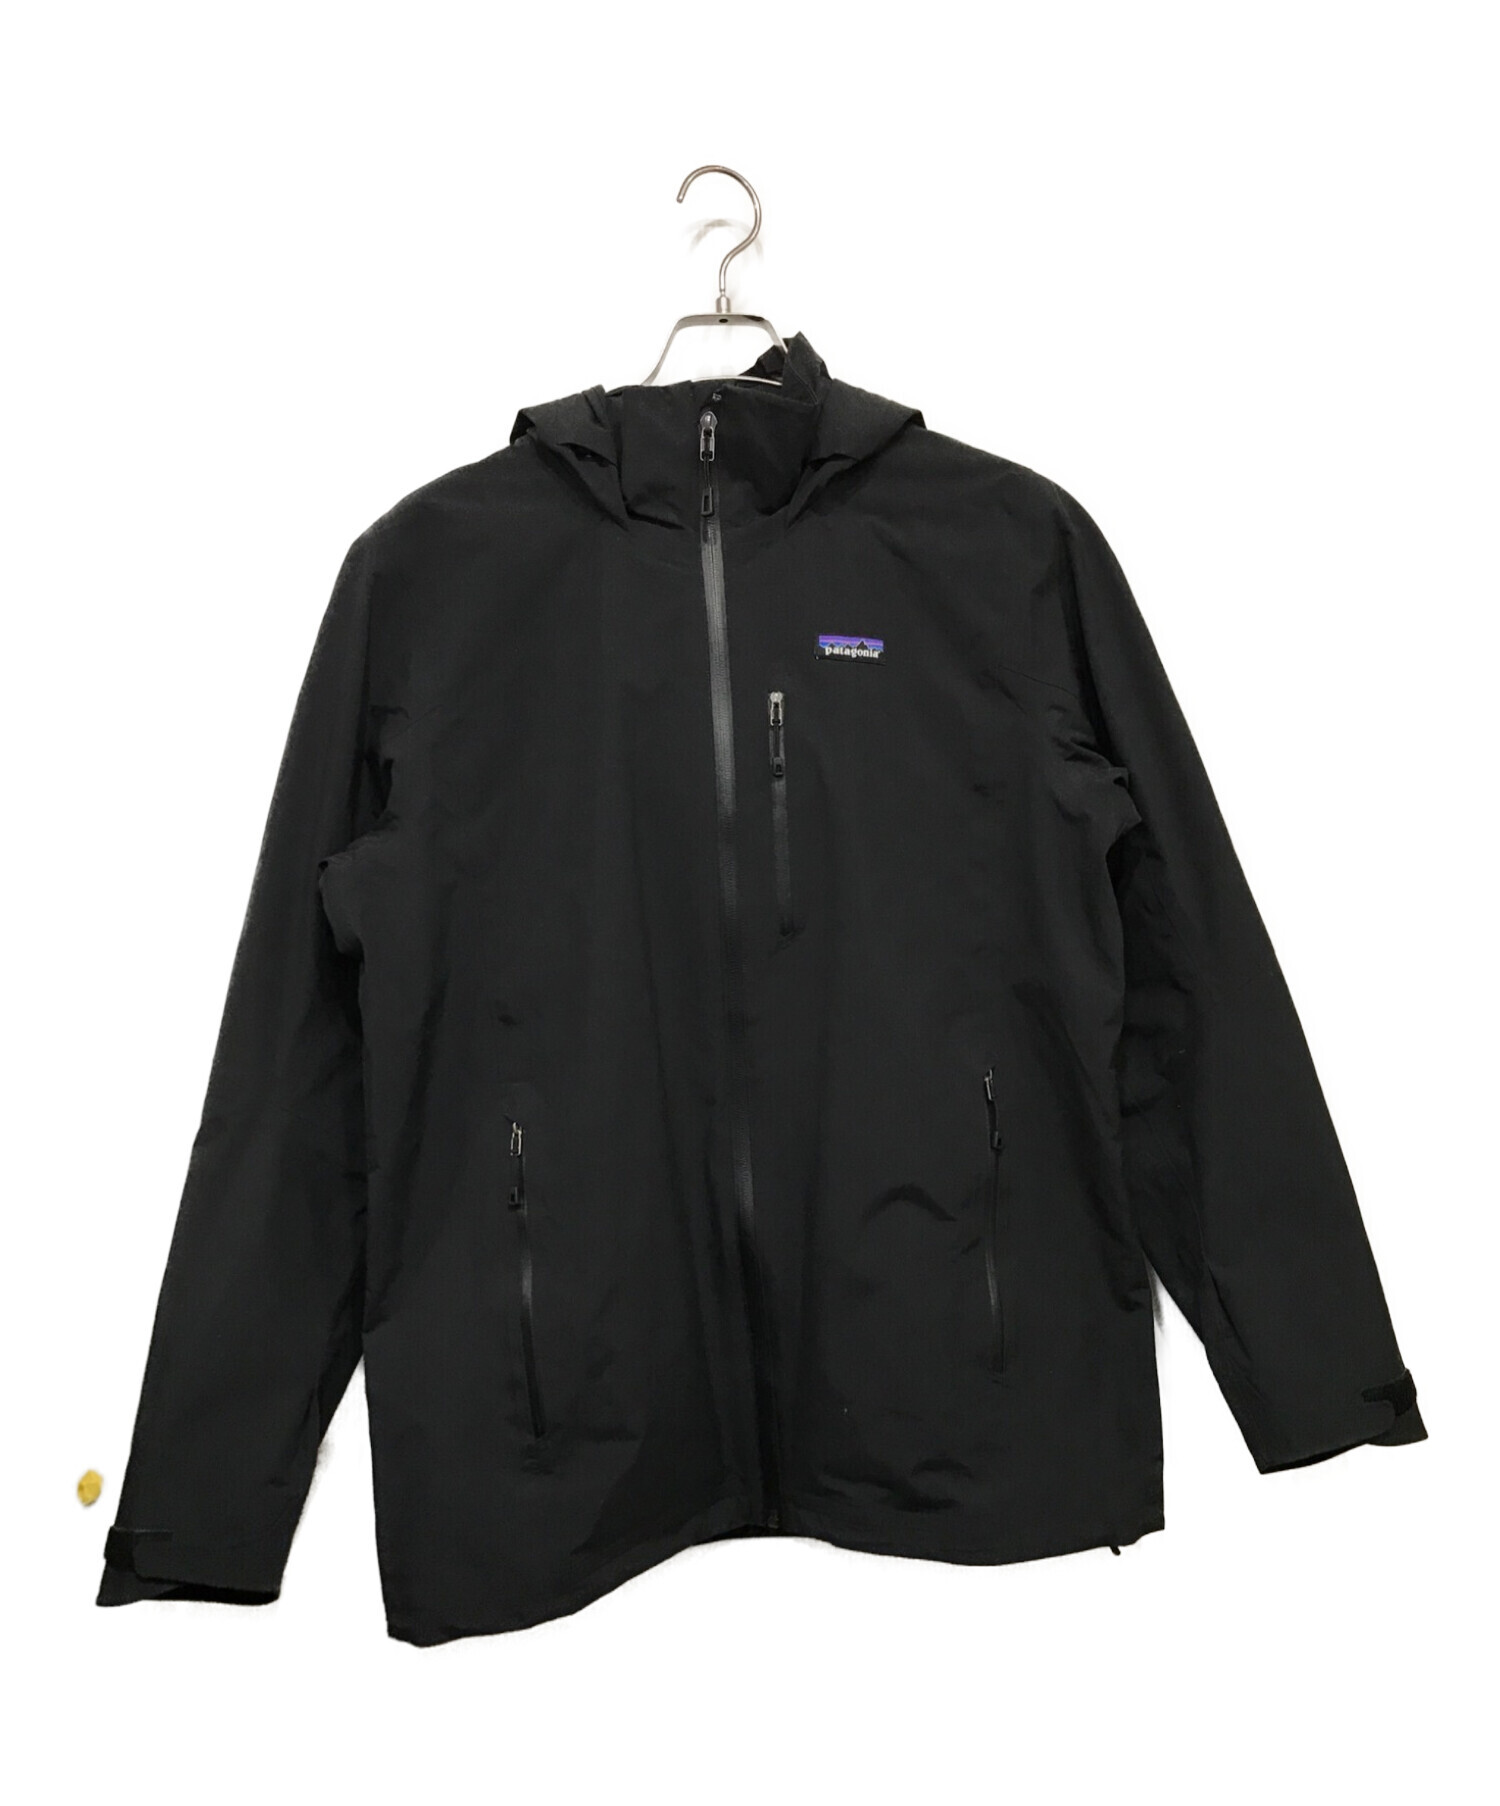 Patagonia (パタゴニア) M's Windsweep Jacket メンズ・ウインドスィープ・ジャケット ブラック サイズ:M